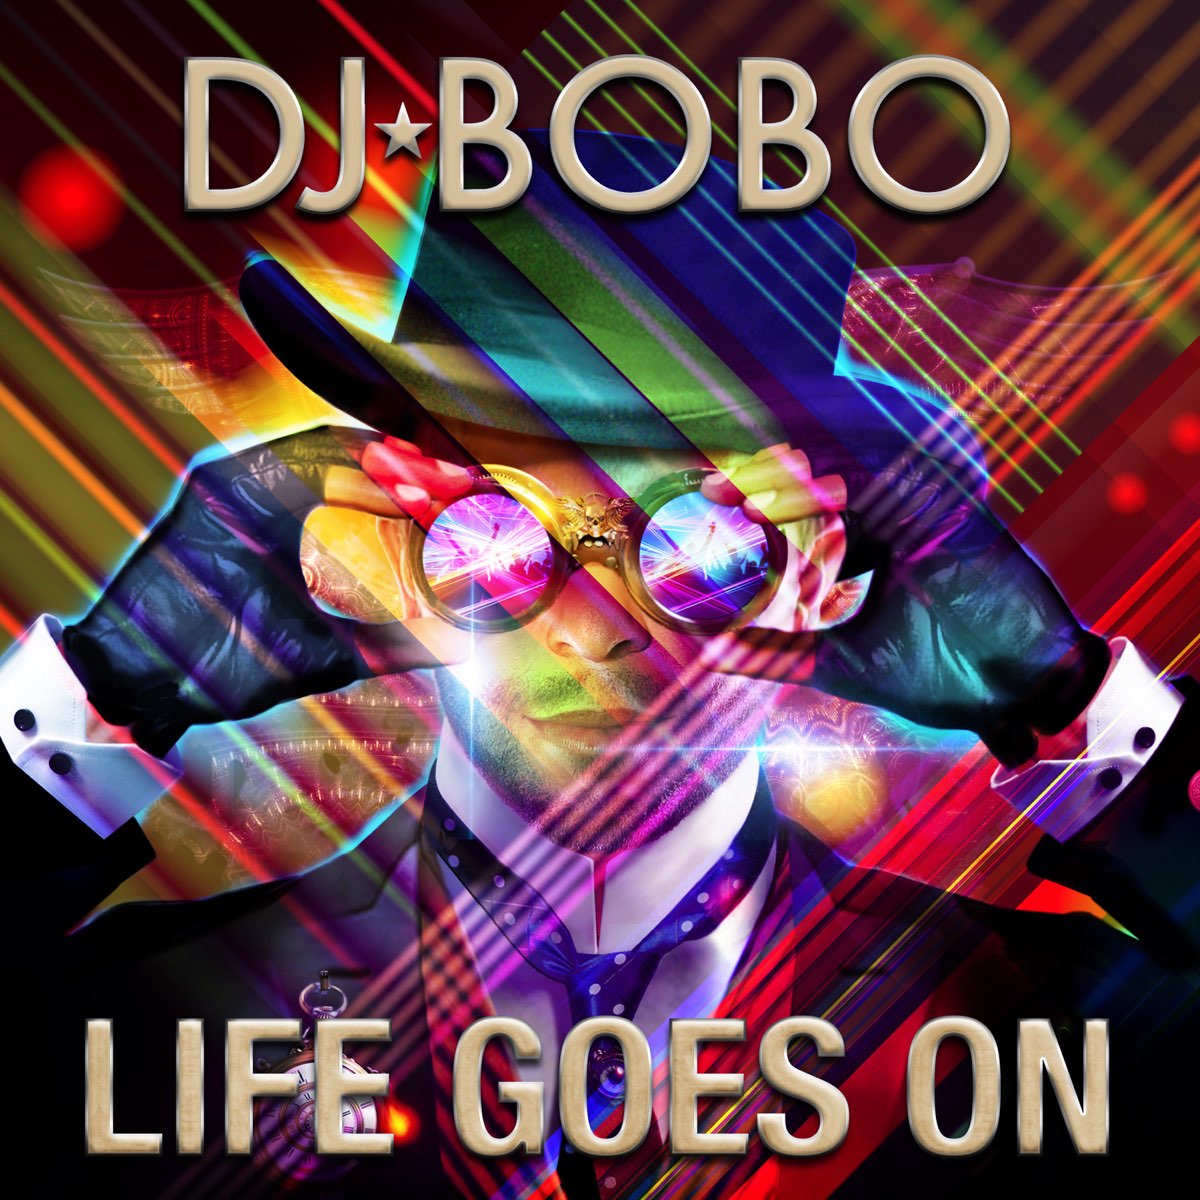 Слушать бобо 90. DJ Bobo. DJ Bobo обложка. DJ Bobo рисунок. Обложка песни Life goes on.